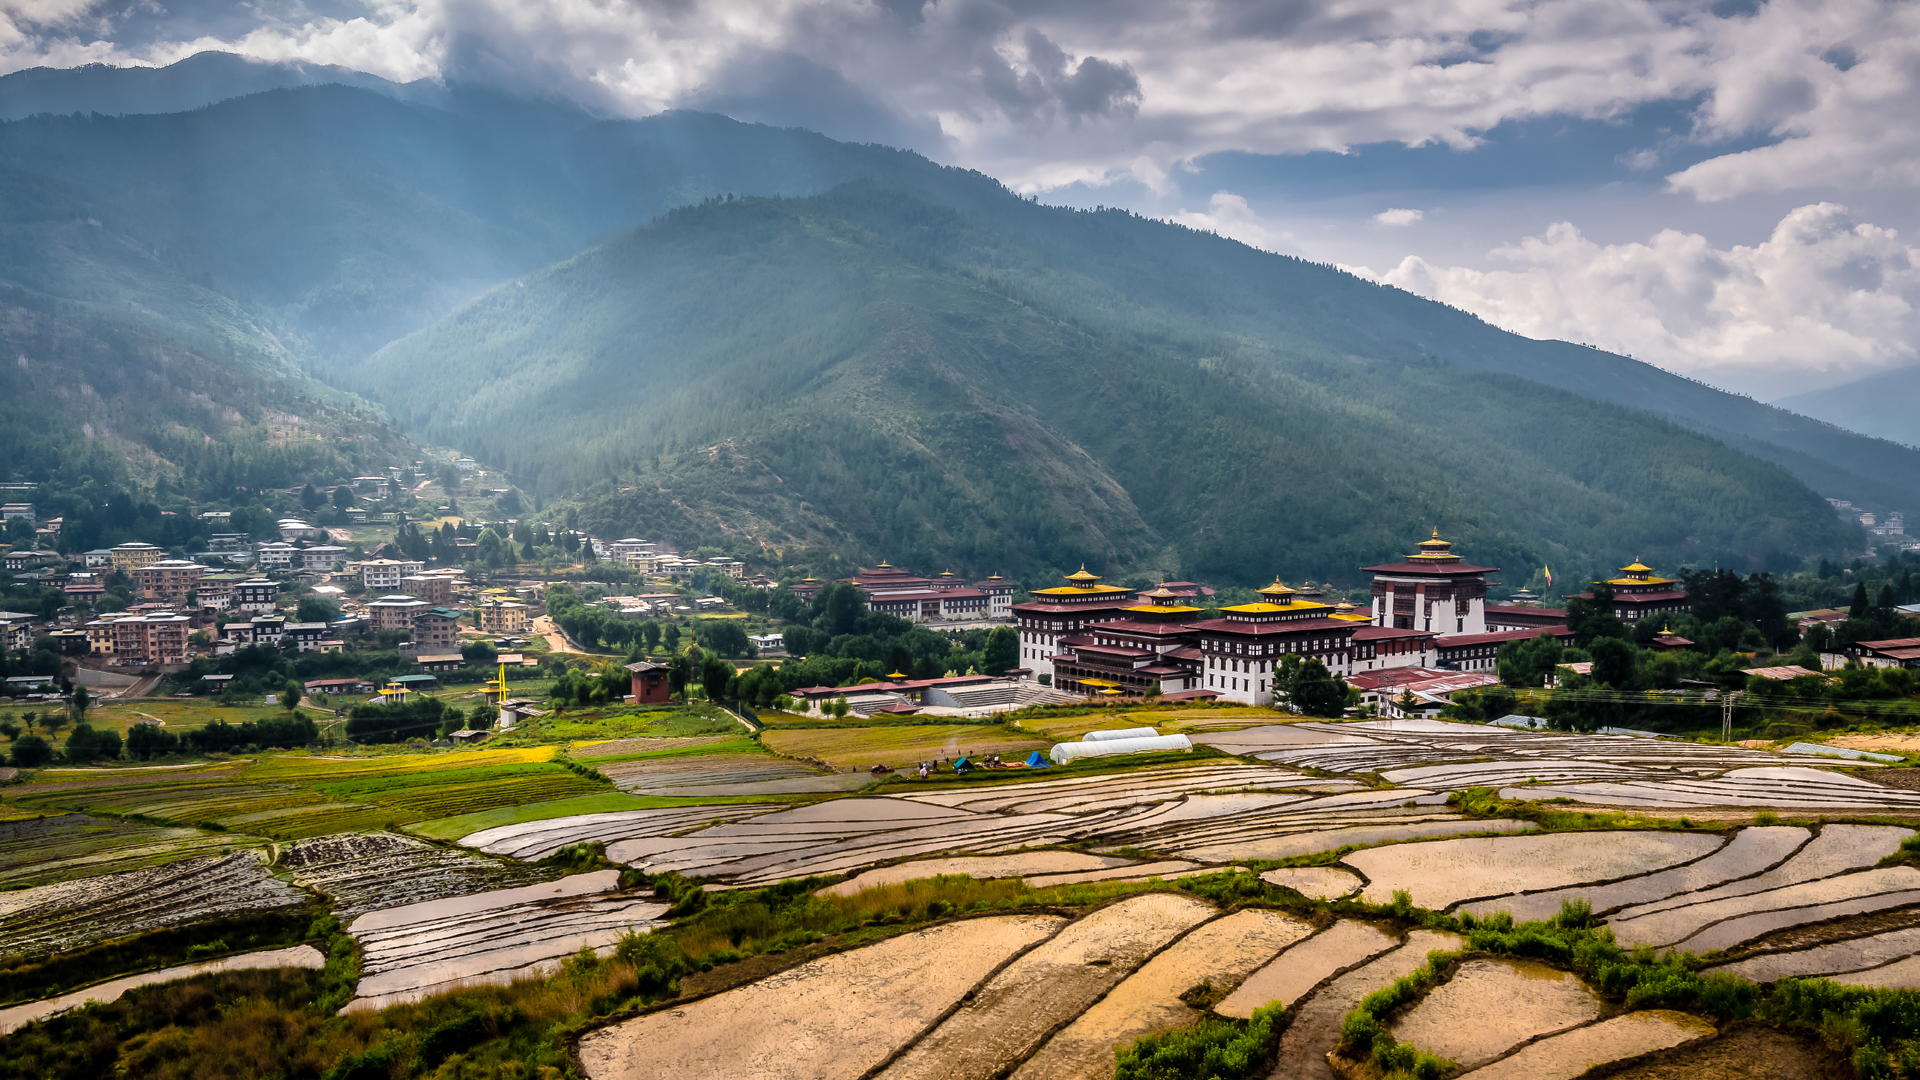 Fly to Paro airport. 1hr drive Paro to Thimpu. Thimphu sightseeing. O/N at Thimphu hotel.'